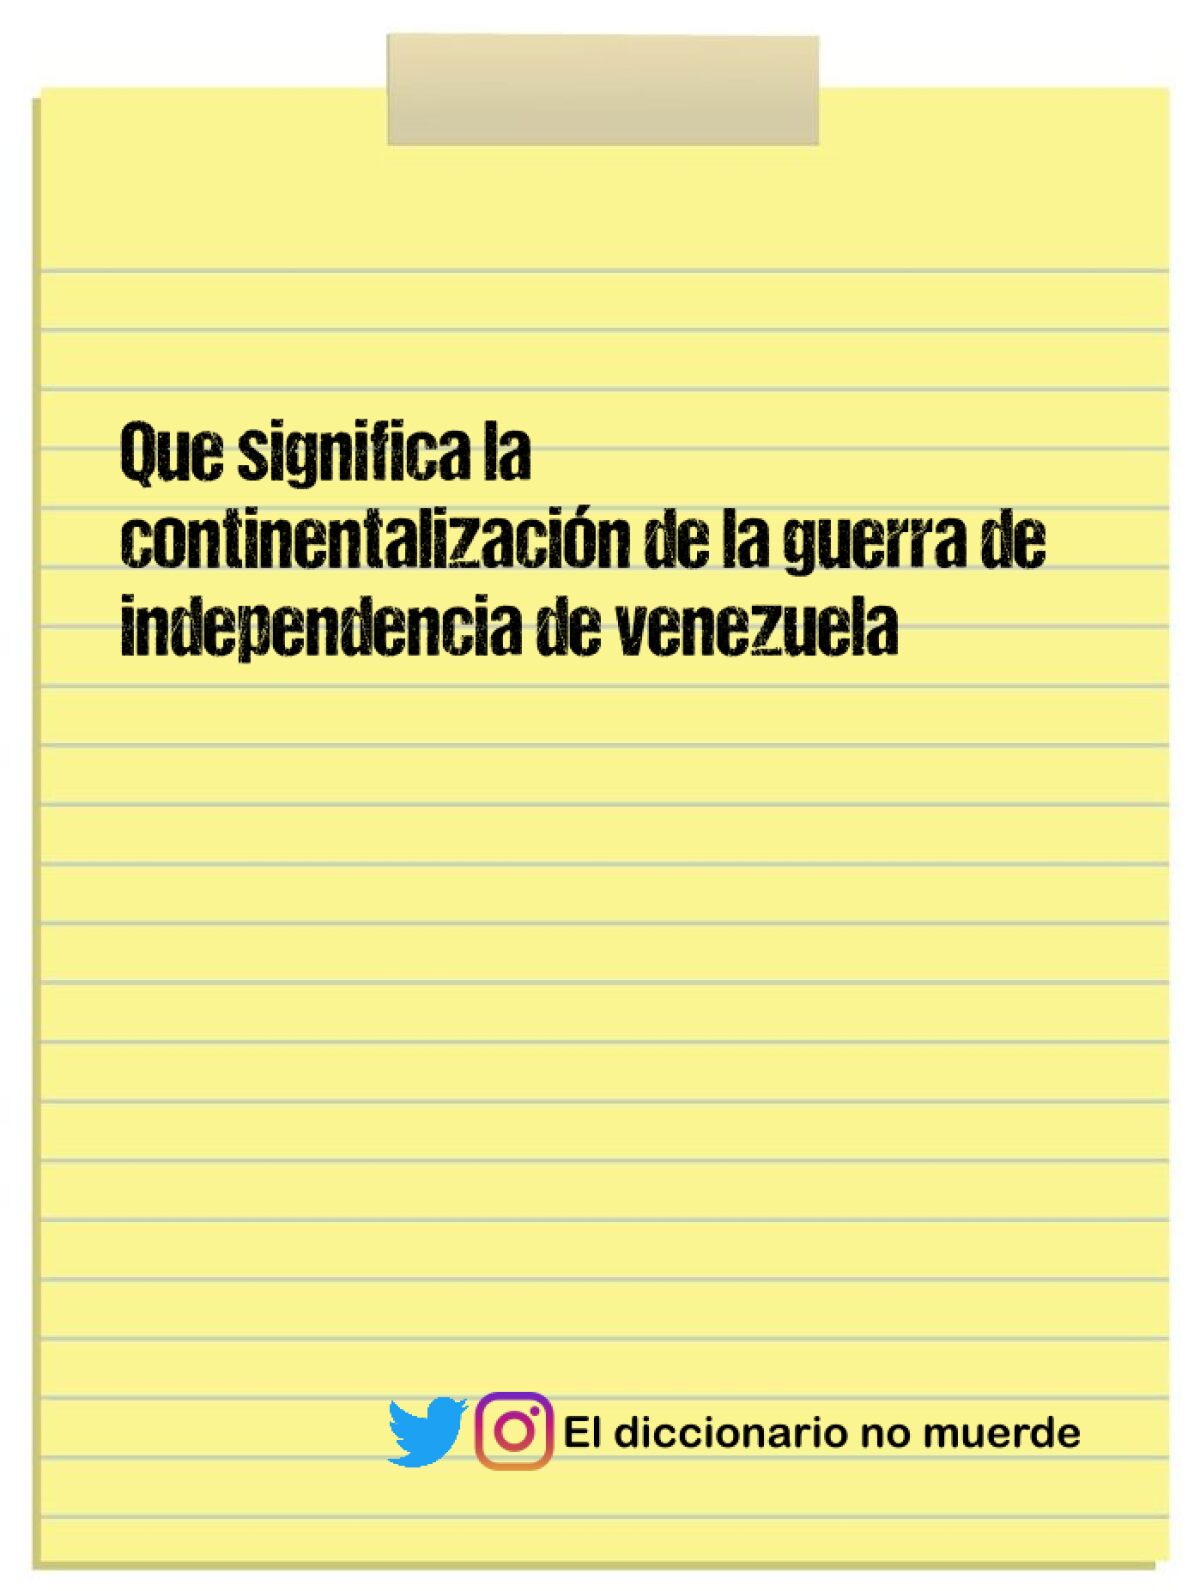 Que significa la continentalización de la guerra de independencia de venezuela